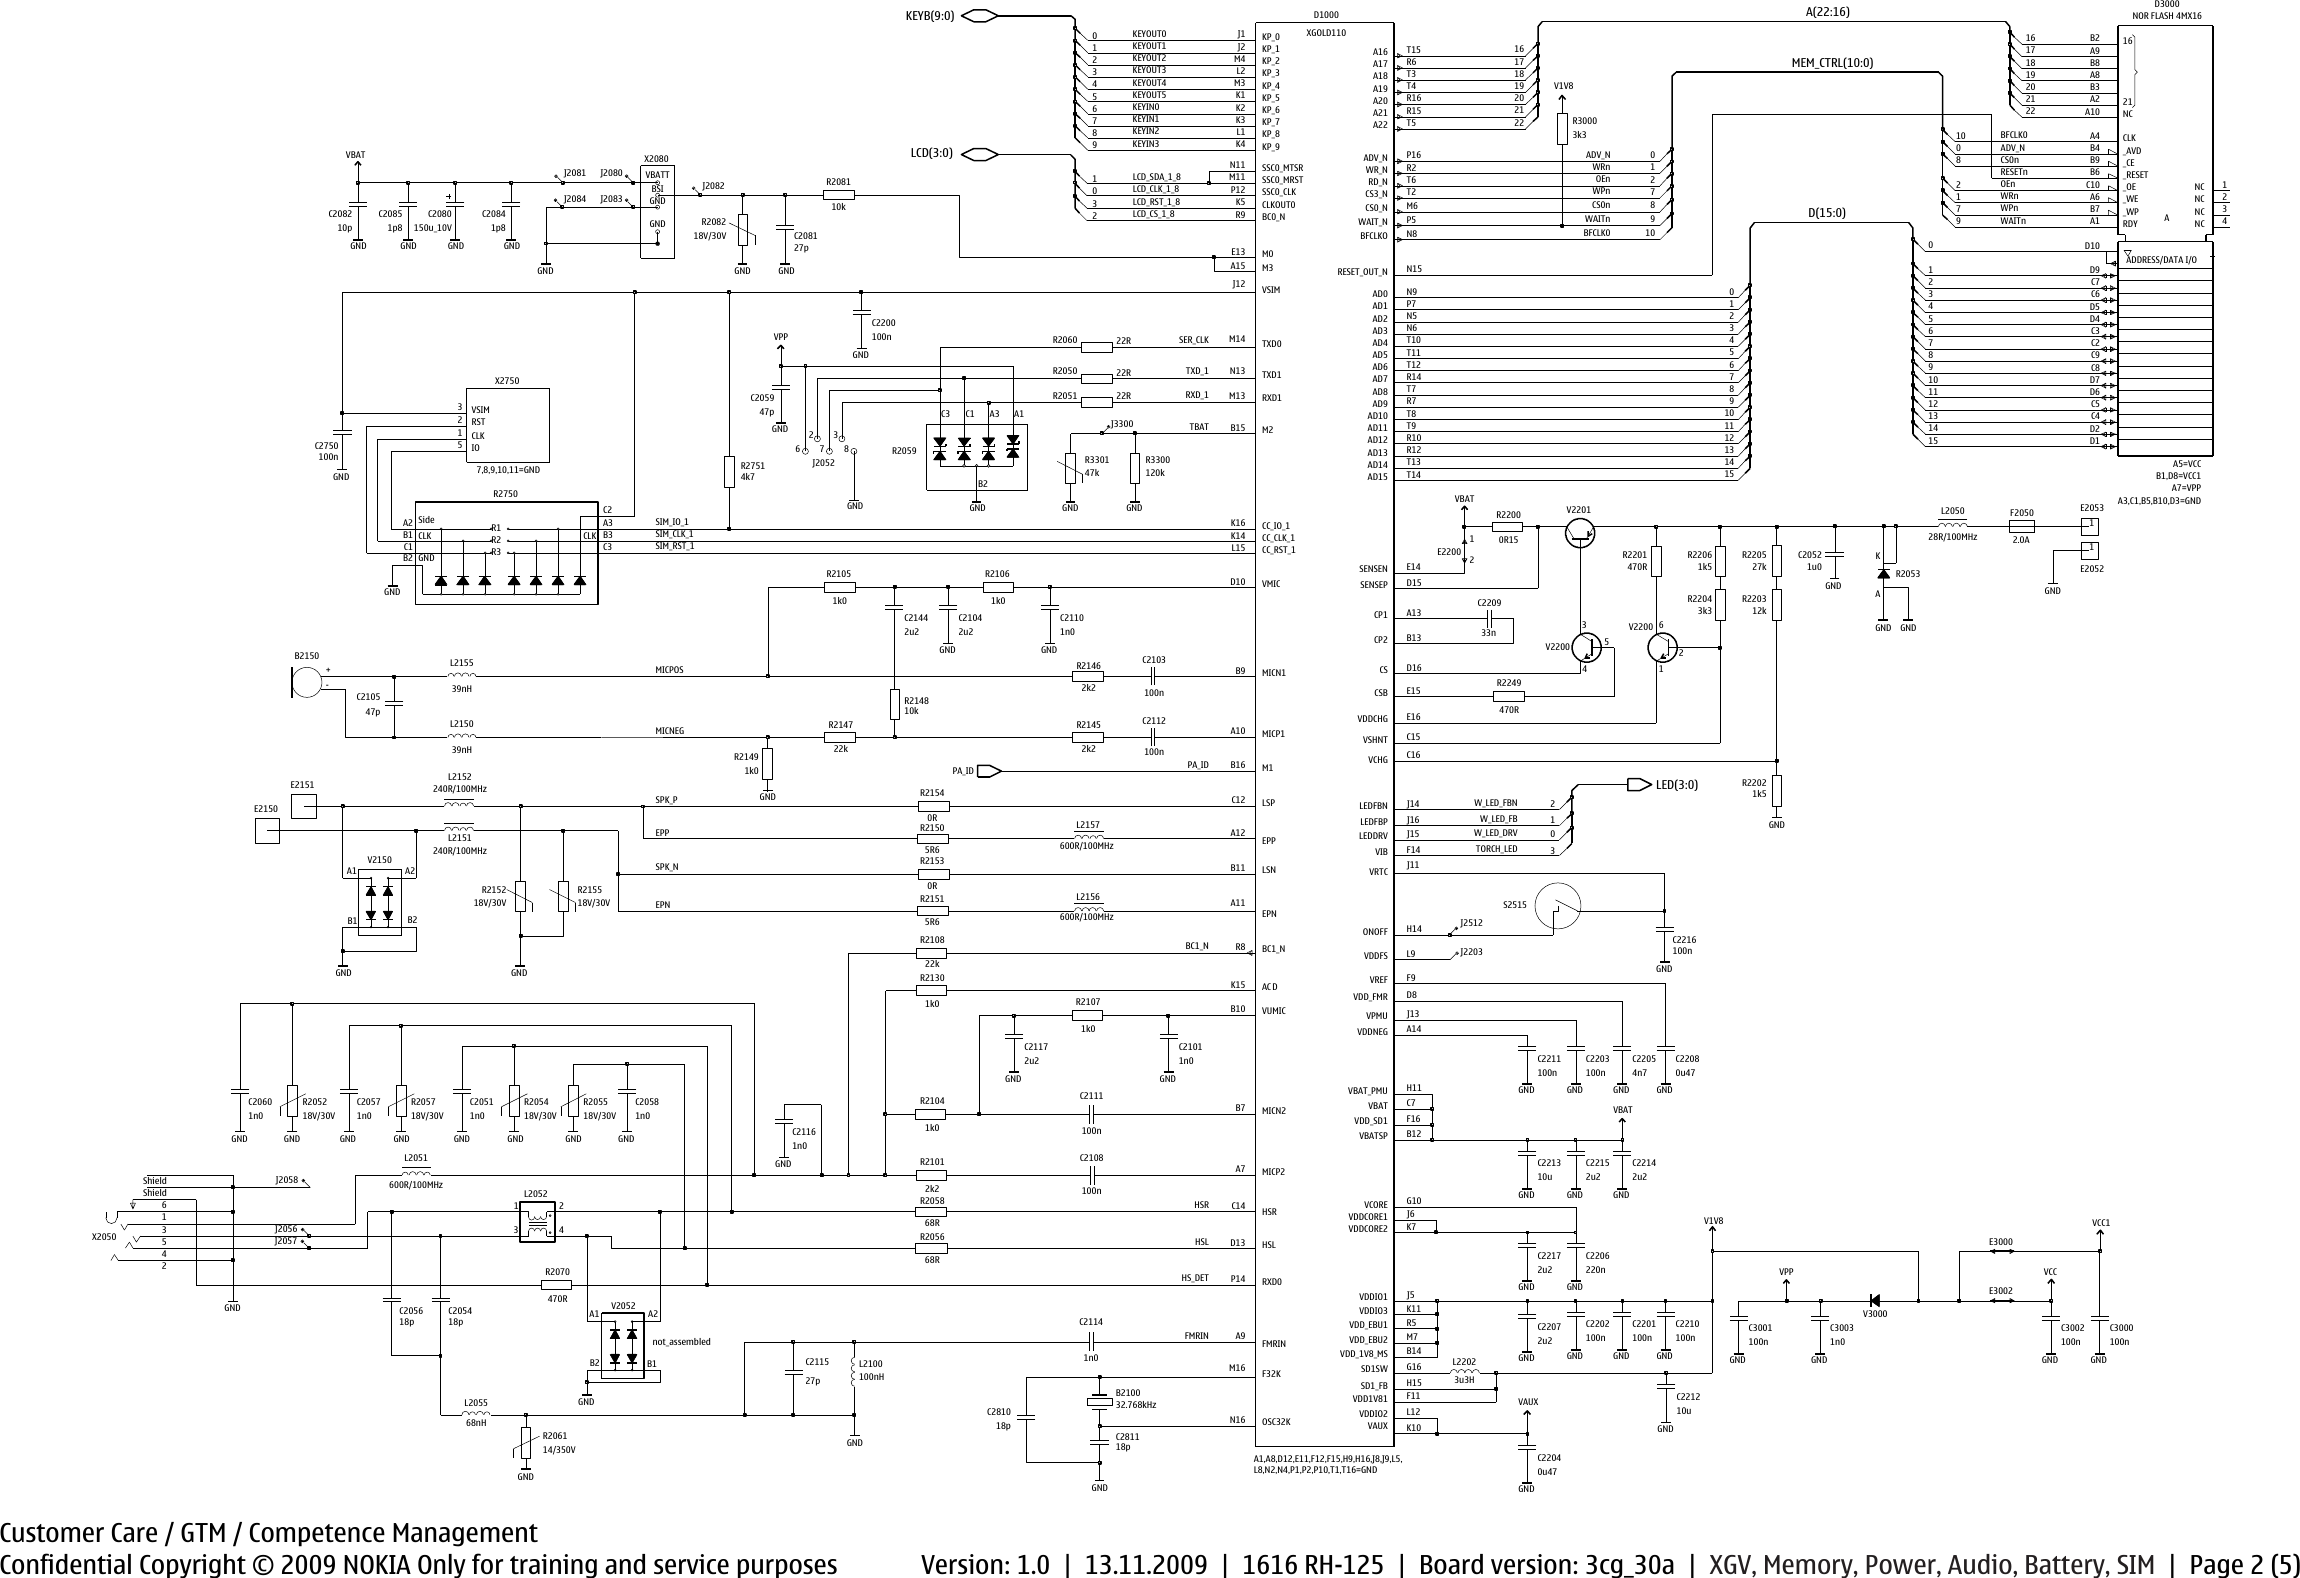 Page 2 of 6 - Nokia 1616 RH-125 - Service Schematics. Www.s-manuals.com. Schematics V1.0